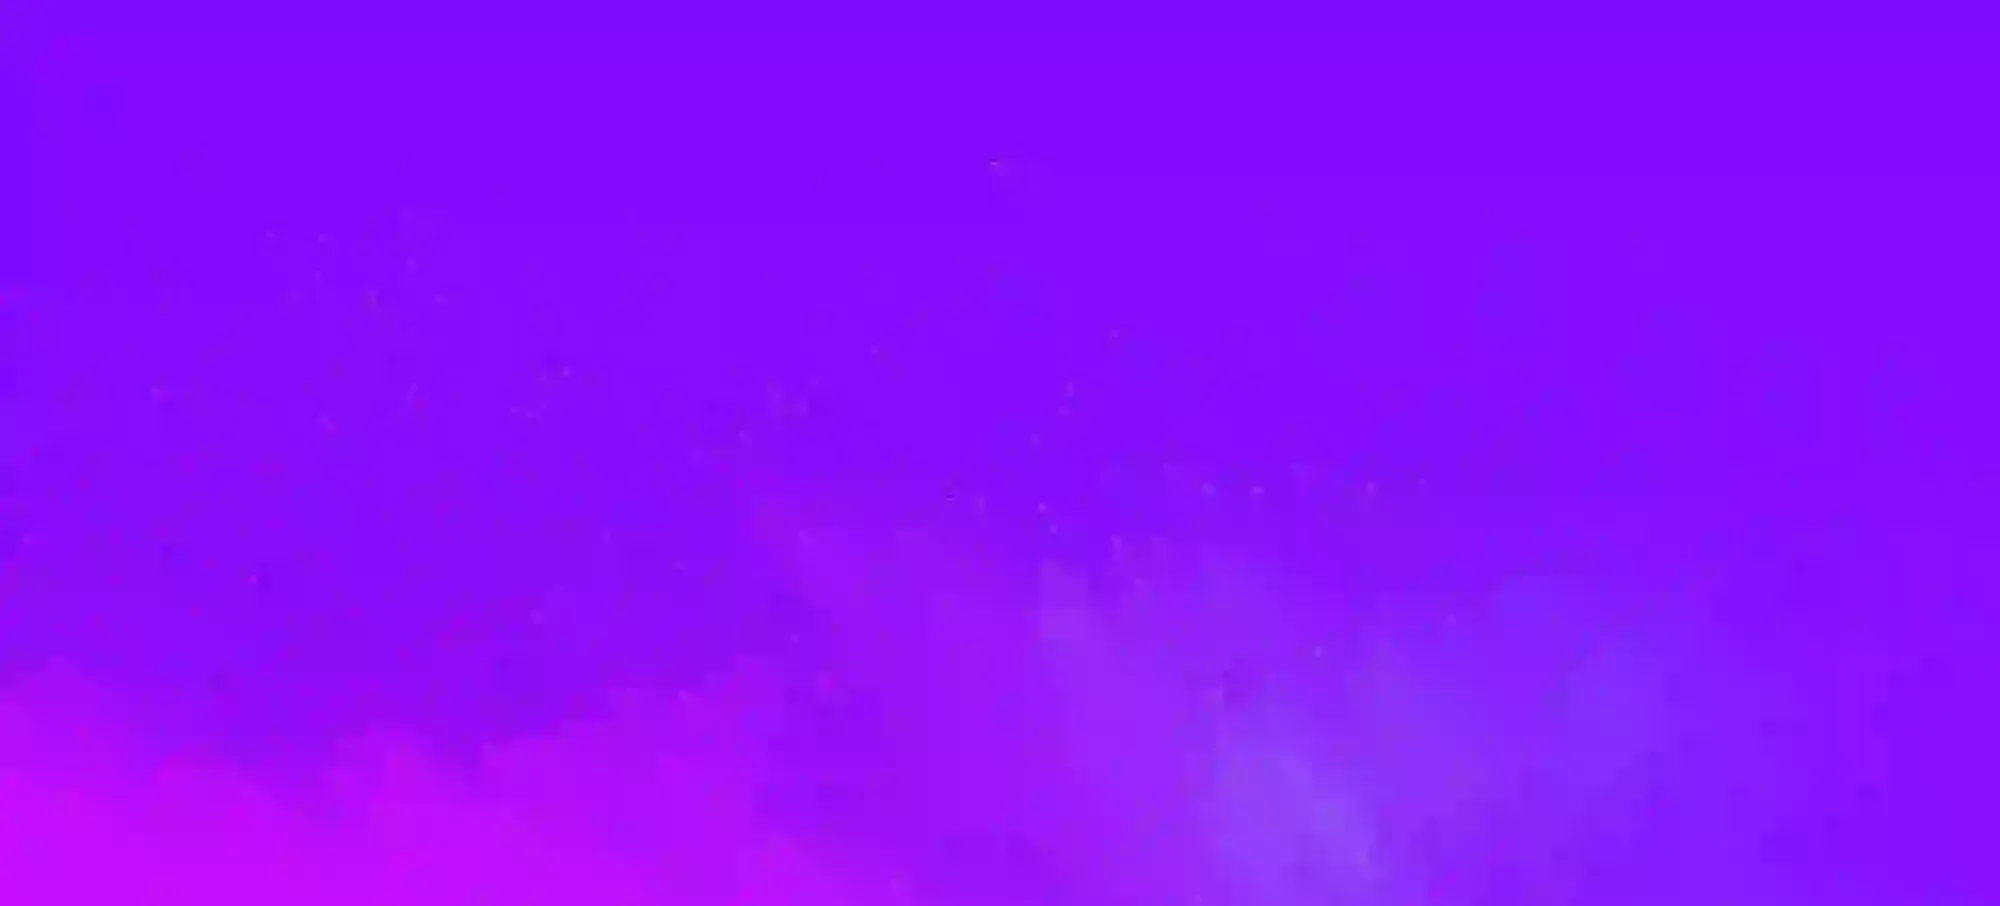 pink splatters on a purple backdrop